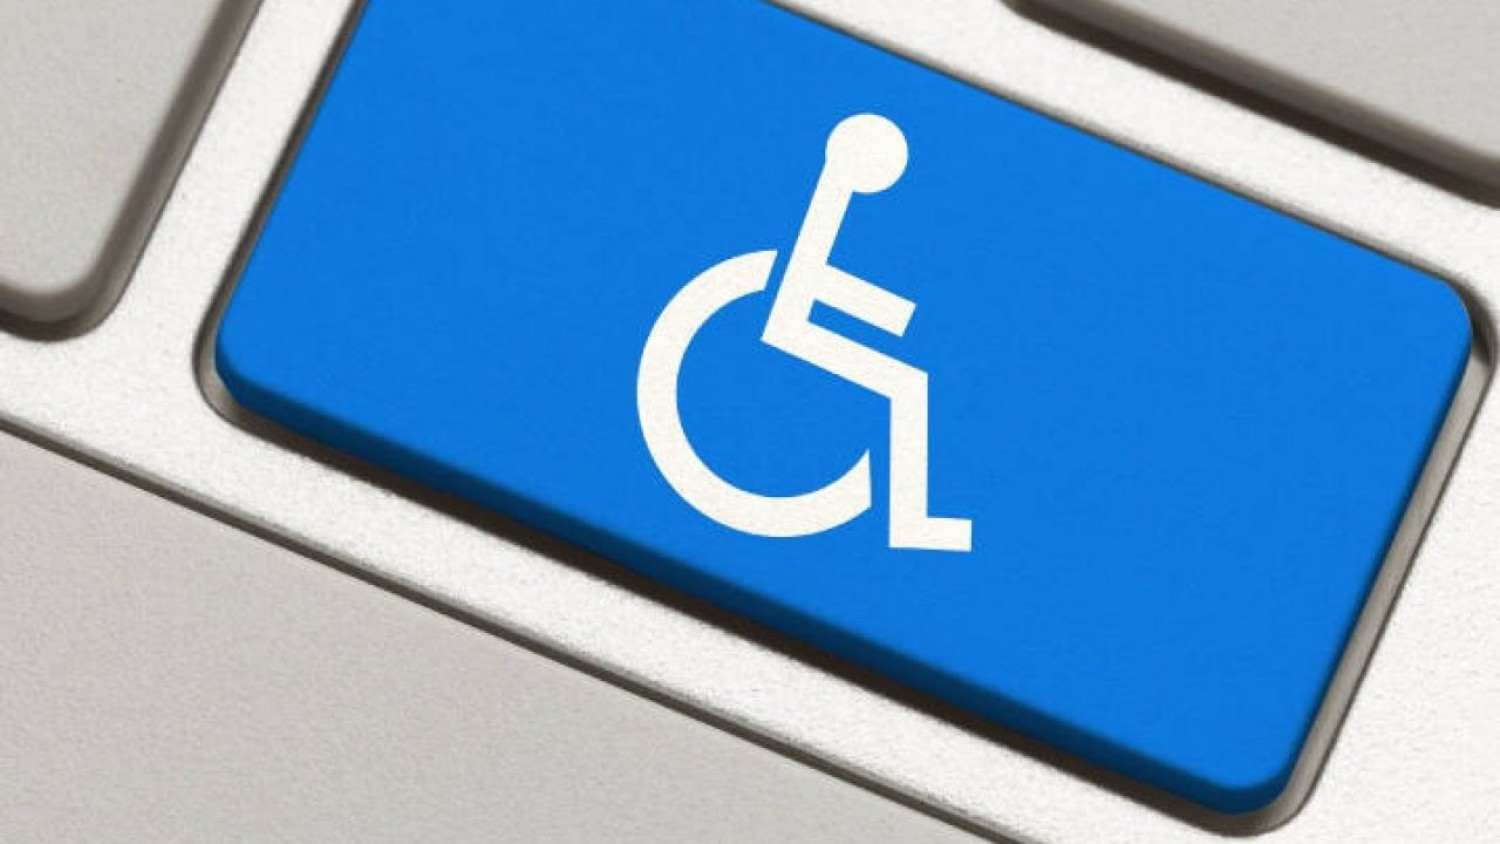 Εικόνα για το άρθρο “Παράταση μέχρι 30/4/2020 της αναβολής των συνεδριάσεων των Κ.Ε.Π.Α. για την εξέταση αιτήσεων πιστοποίησης αναπηρίας.”